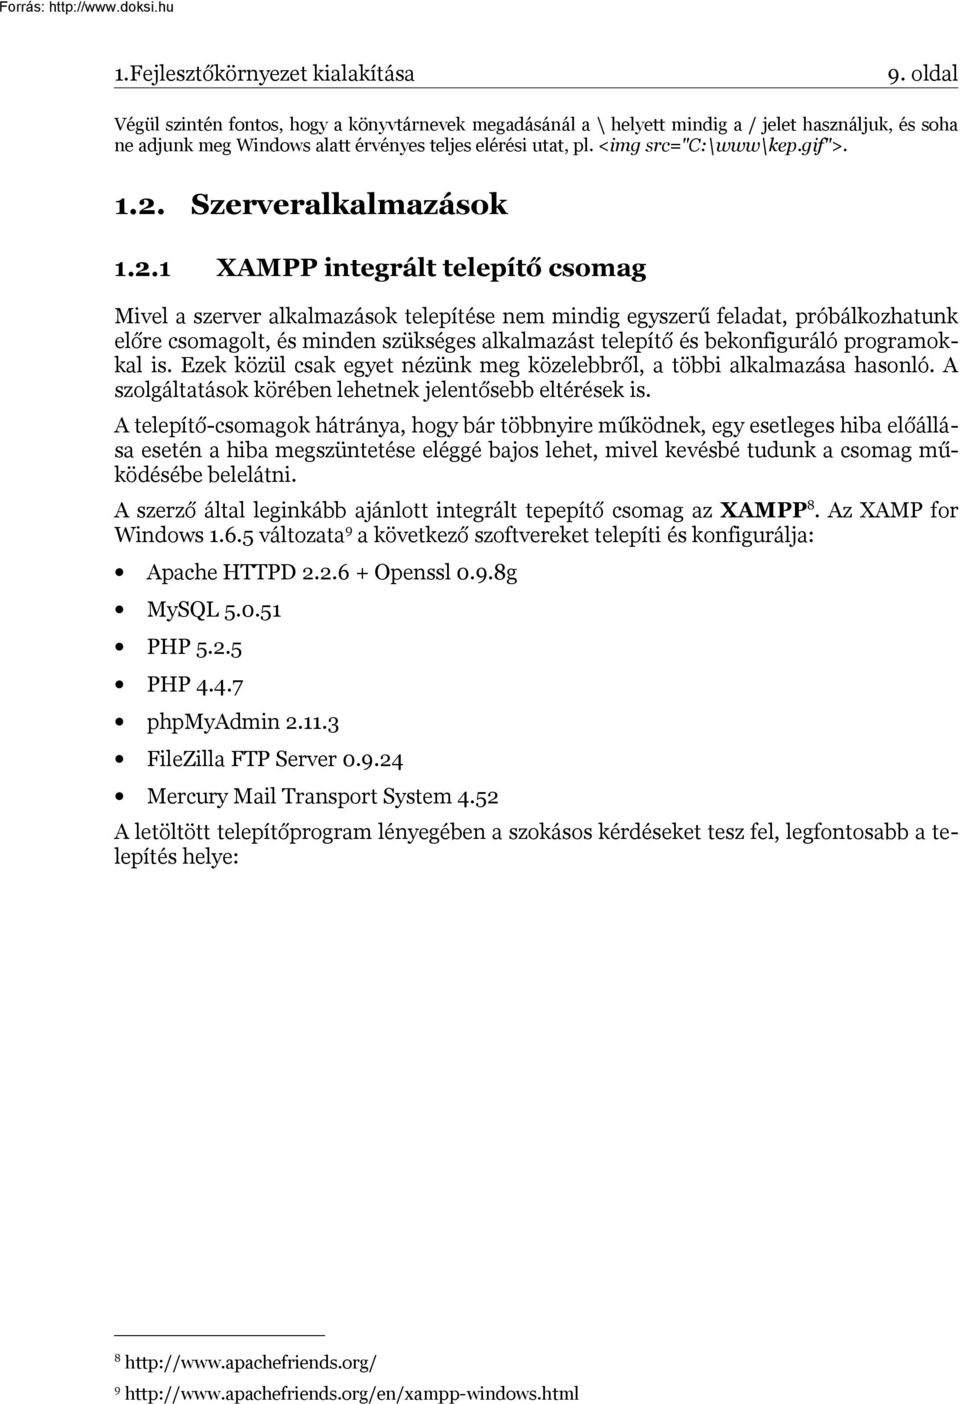 1.2. Szerveralkalmazások 1.2.1 XAMPP integrált telepítő csomag Mivel a szerver alkalmazások telepítése nem mindig egyszerű feladat, próbálkozhatunk előre csomagolt, és minden szükséges alkalmazást